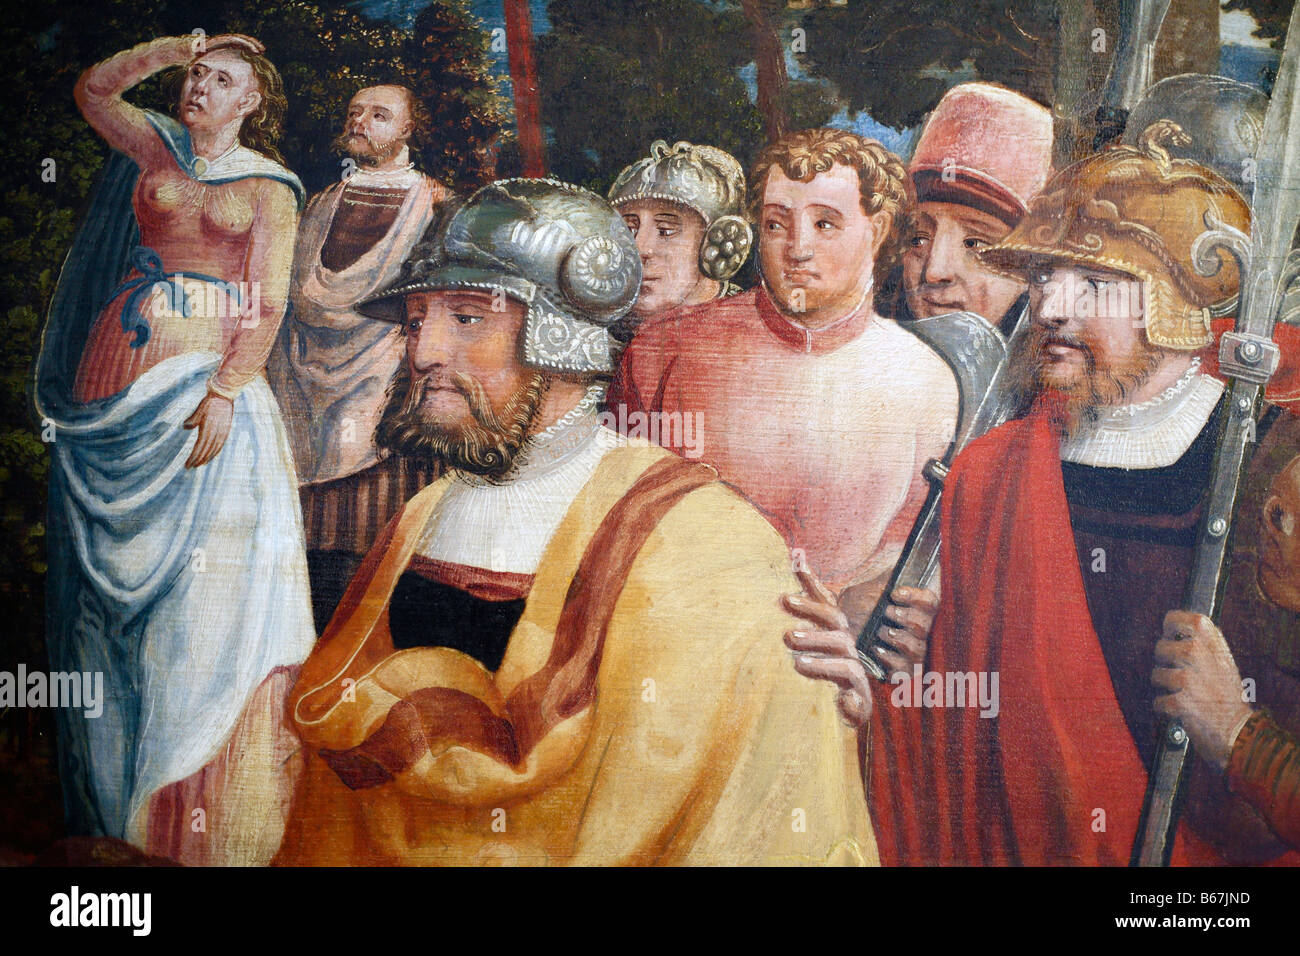 Detalle de la imagen del 16 siglo, Museo Rheinisches Landesmuseum, Trier, Renania Palatinado, Alemania Foto de stock